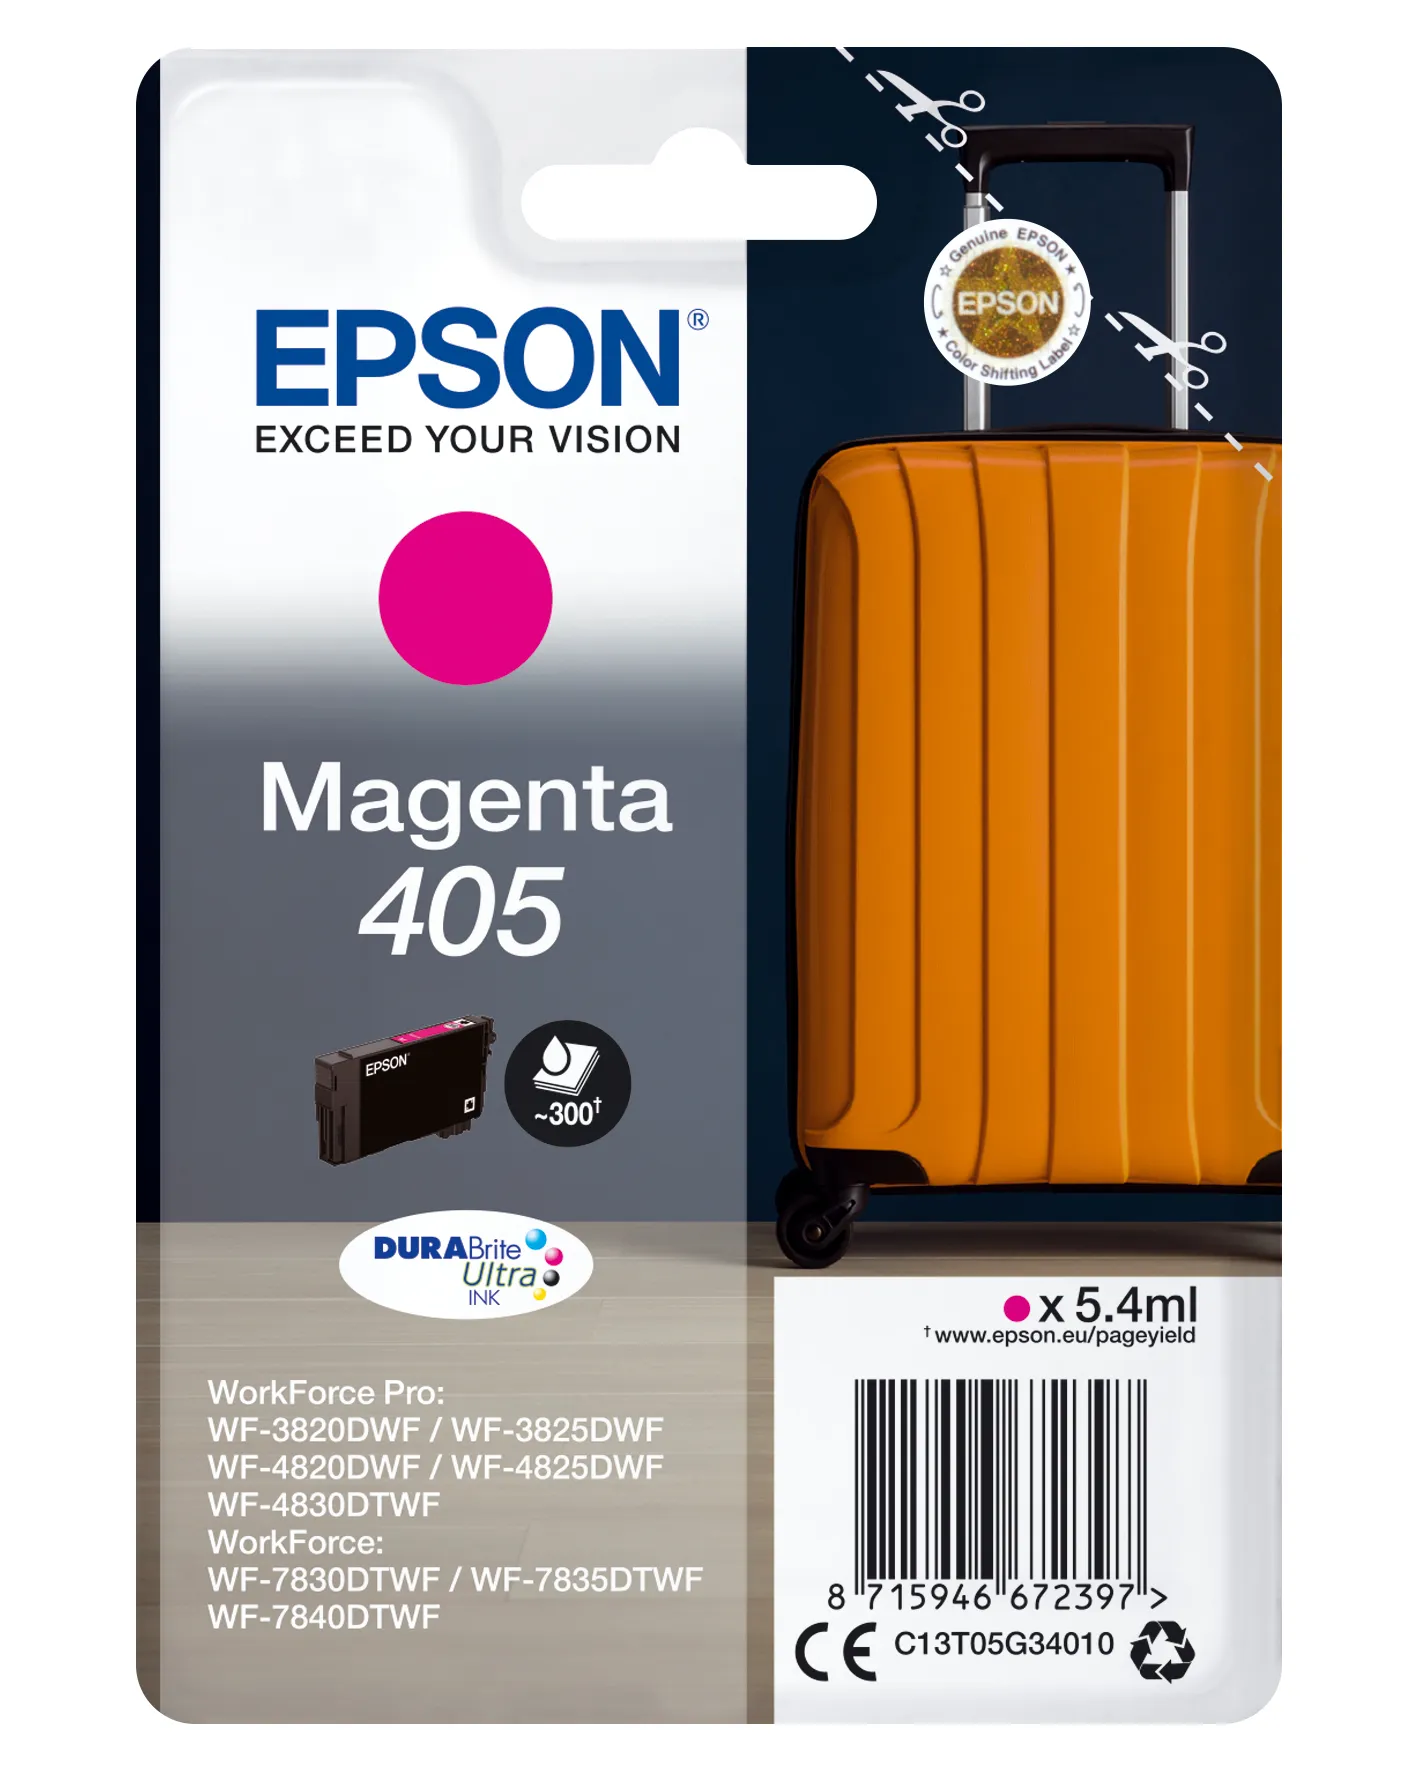 Achat EPSON Singlepack Magenta 405 DURABrite Ultra Ink sur hello RSE - visuel 3